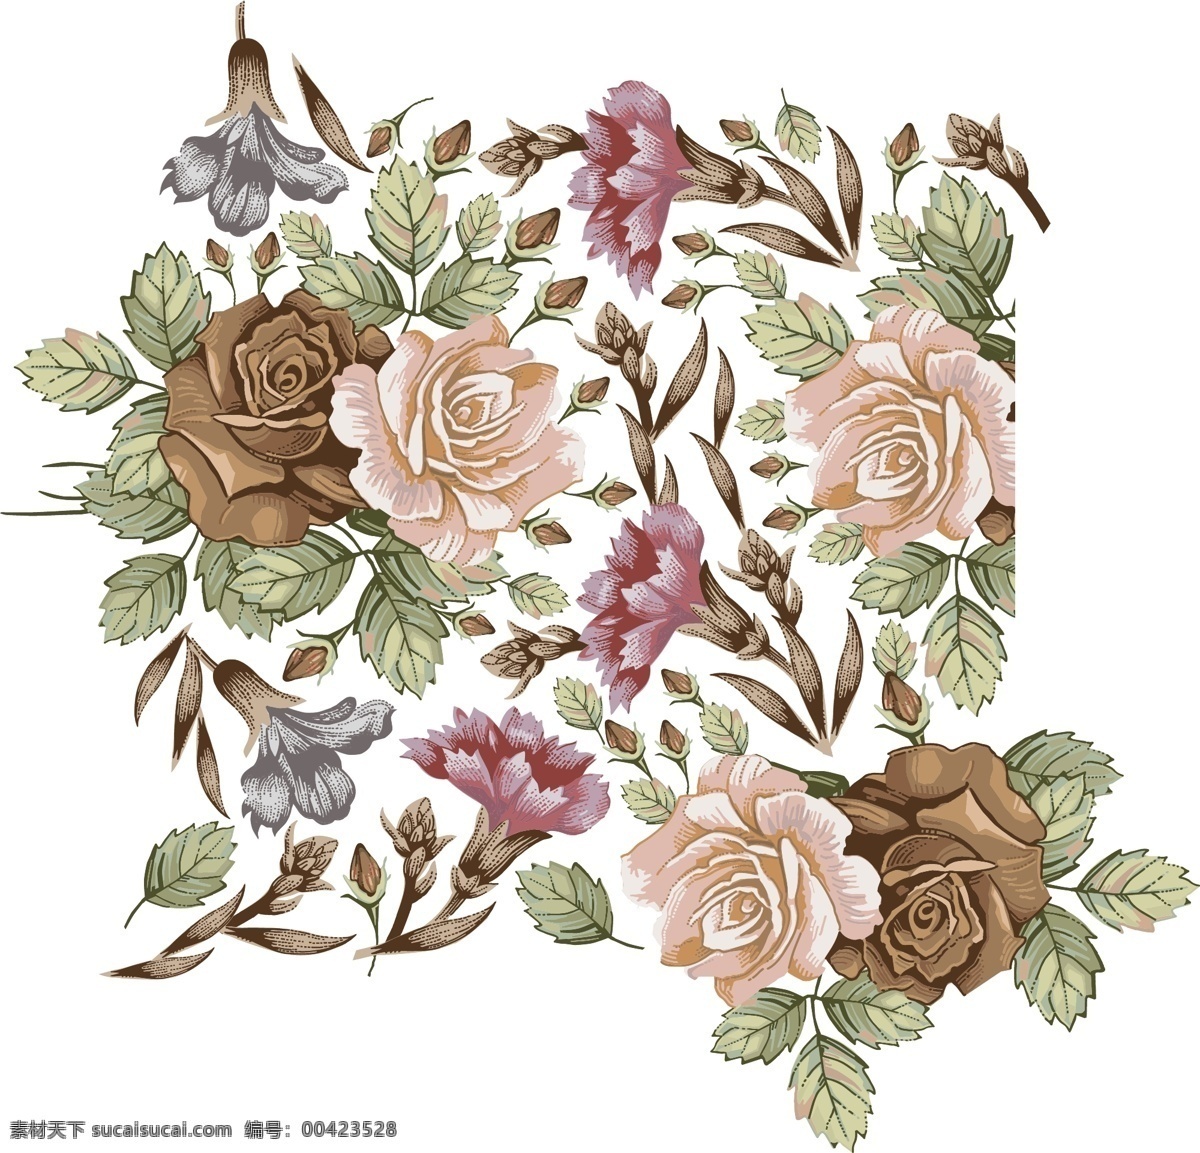 古风 典雅 线条 手绘 花卉 矢量 图案 设 线条手绘花卉 矢量图案 底纹边框 花边花纹